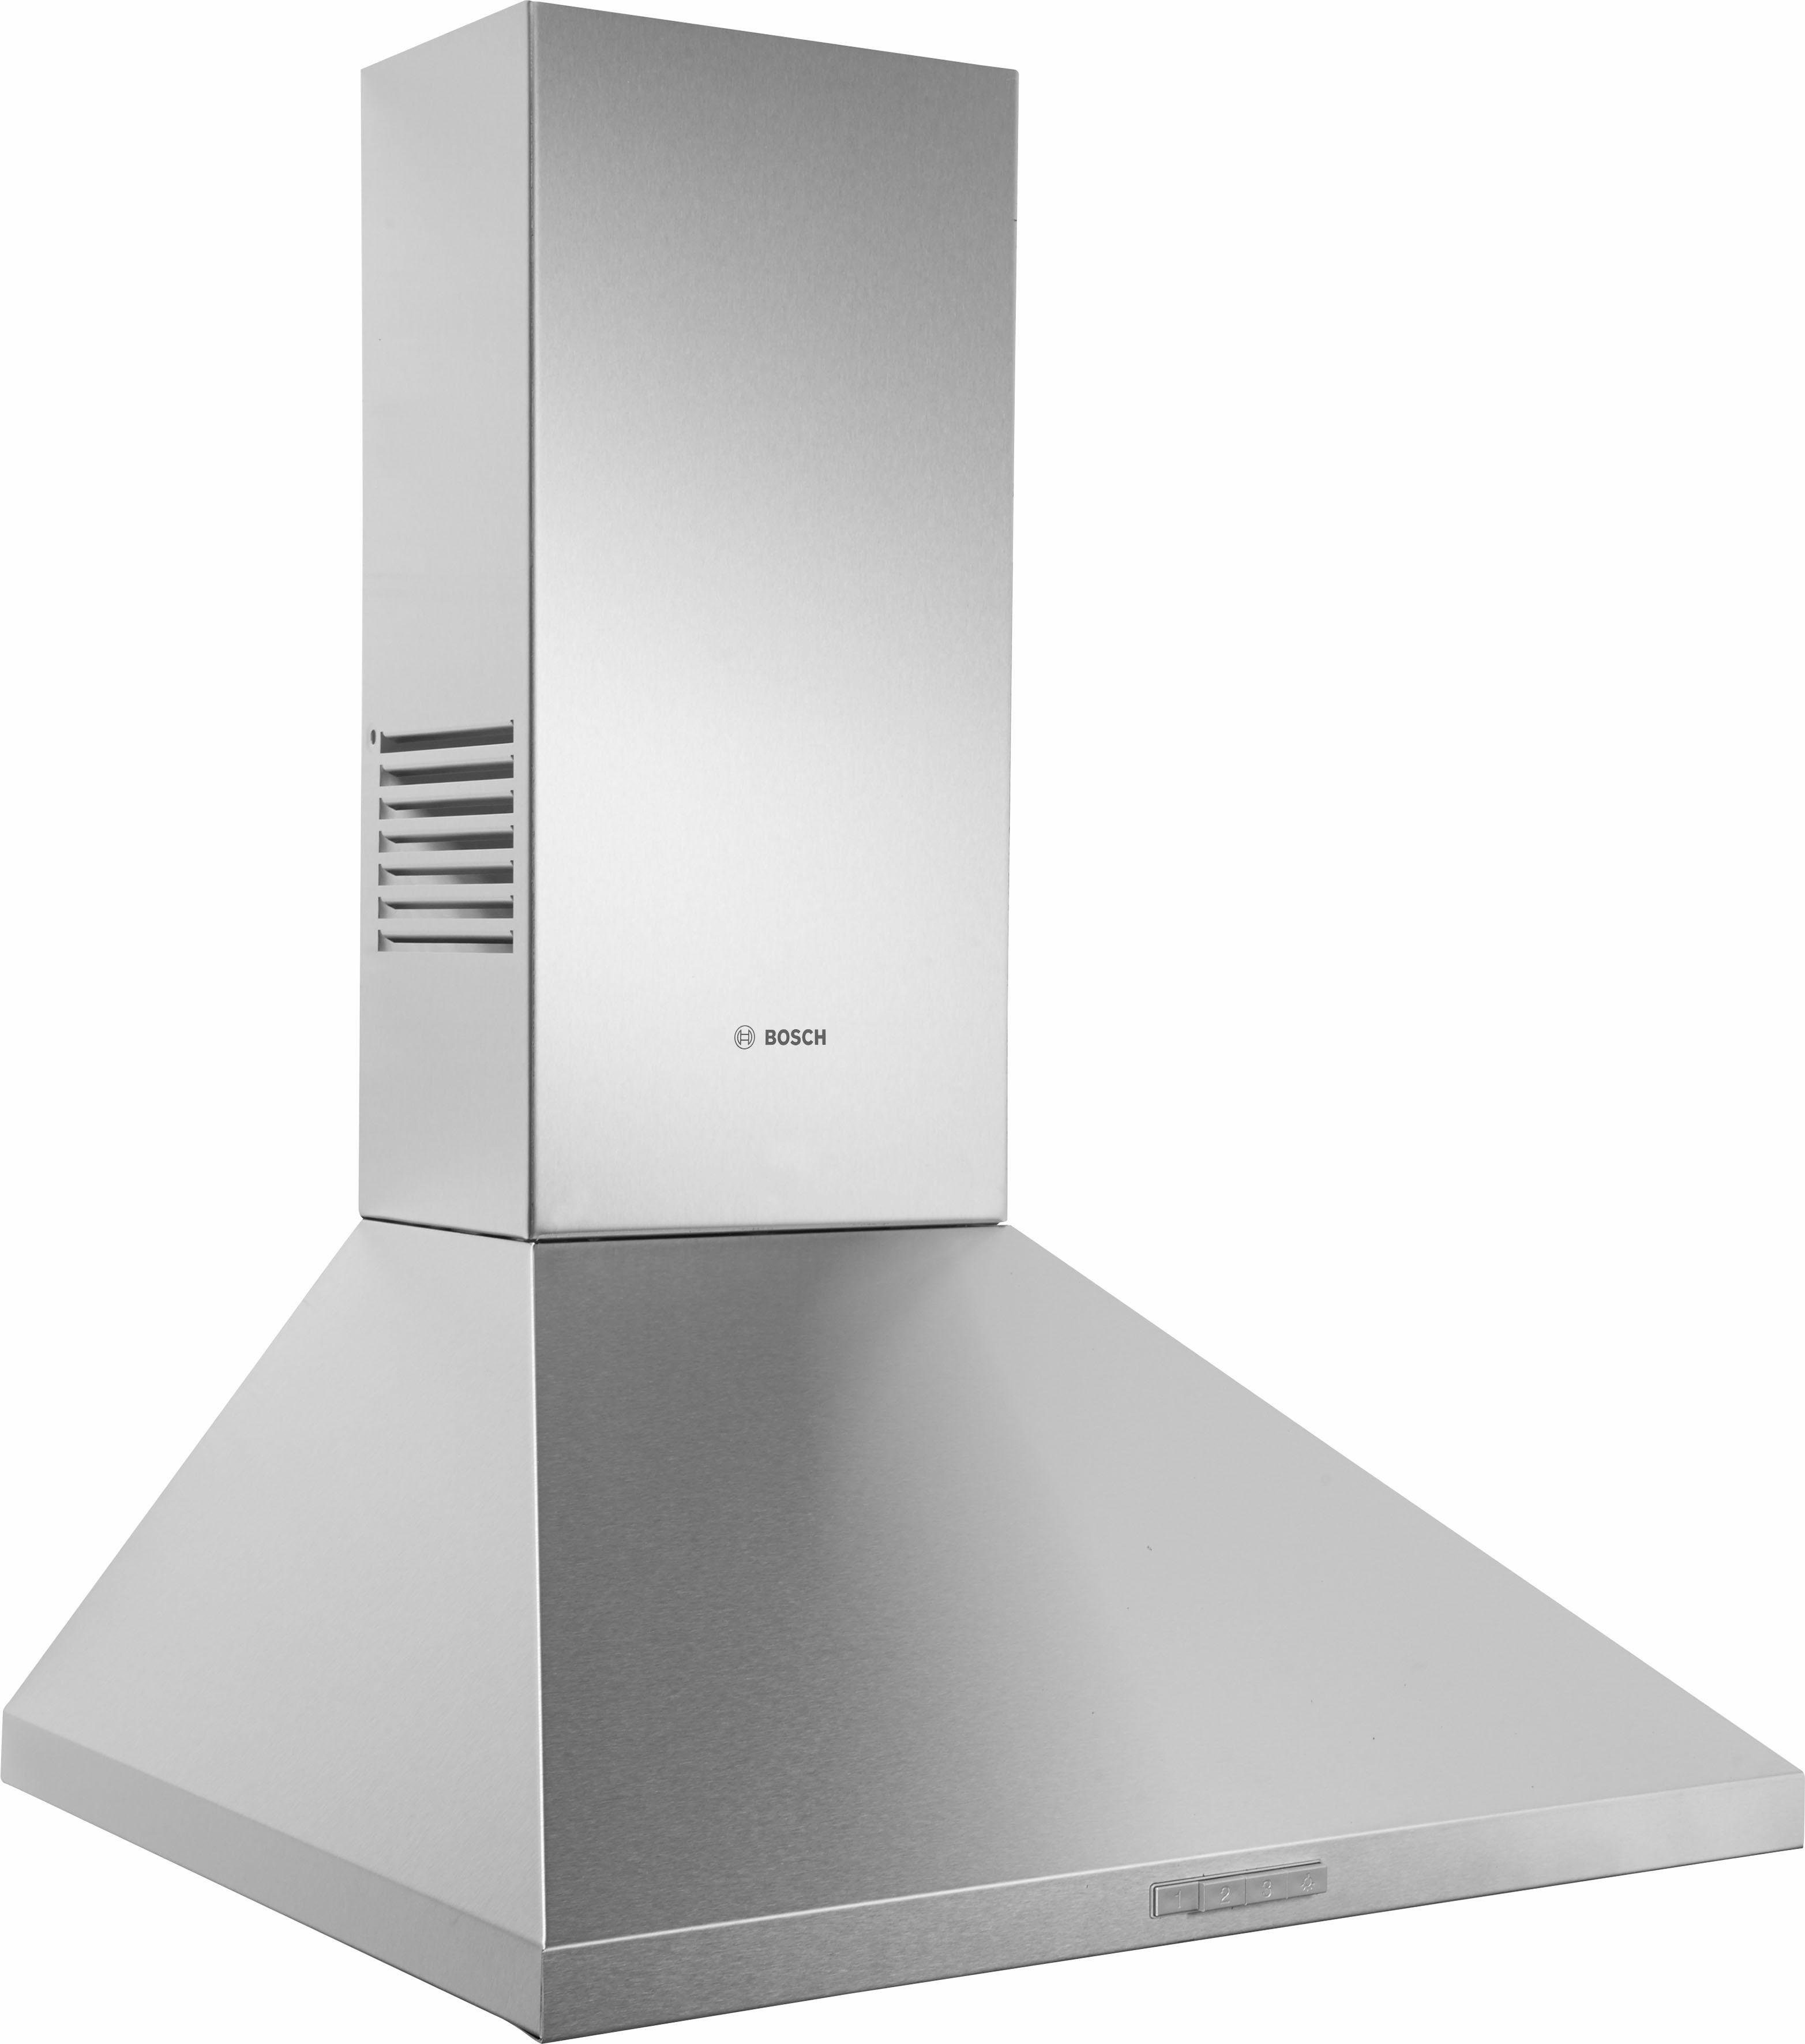 ein Küchenklima für 570 BOSCH Abluftleistung: zu schnell sorgt bis optimales Wandhaube m³/h mit DWP66BC50,